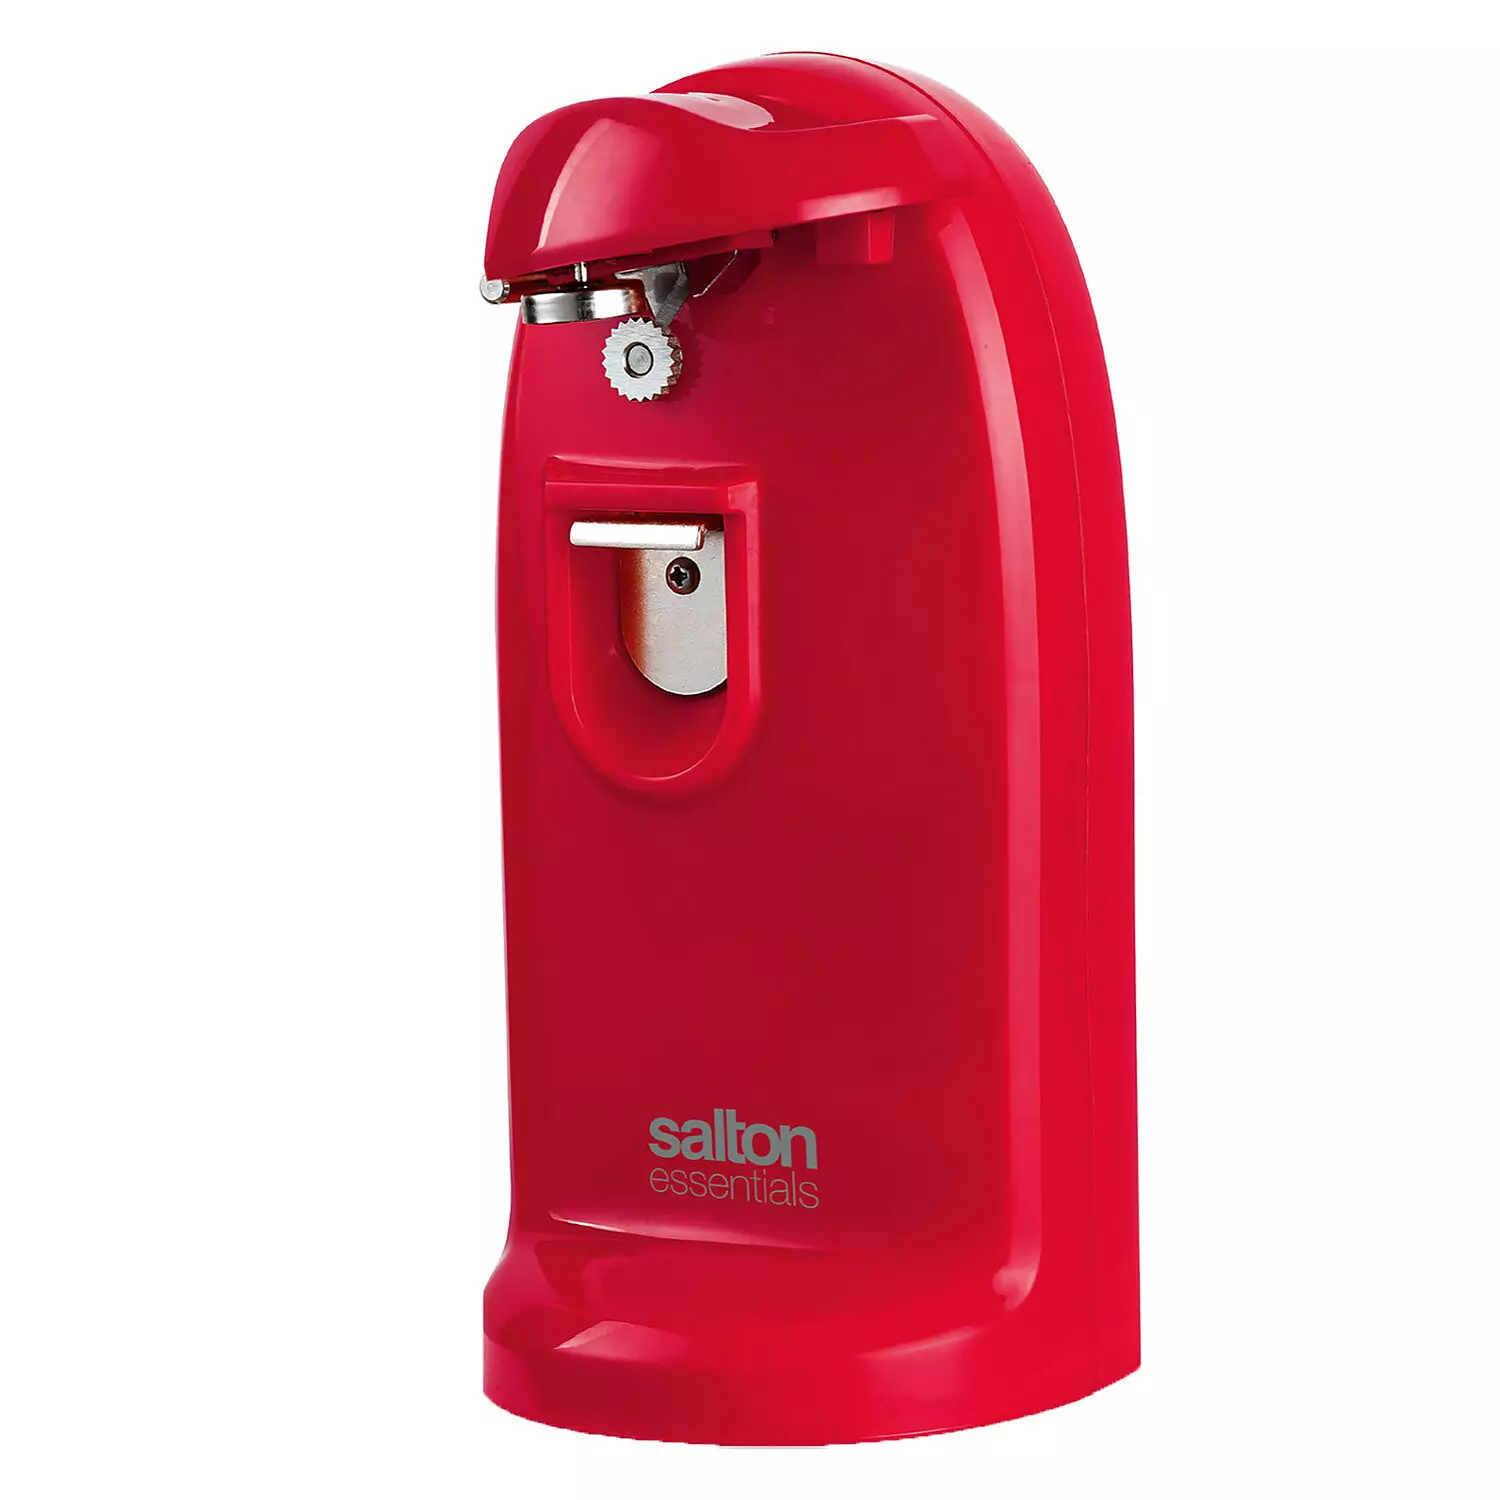 Salton Essentials - Ouvre-boîte électrique, rouge. Colour: red